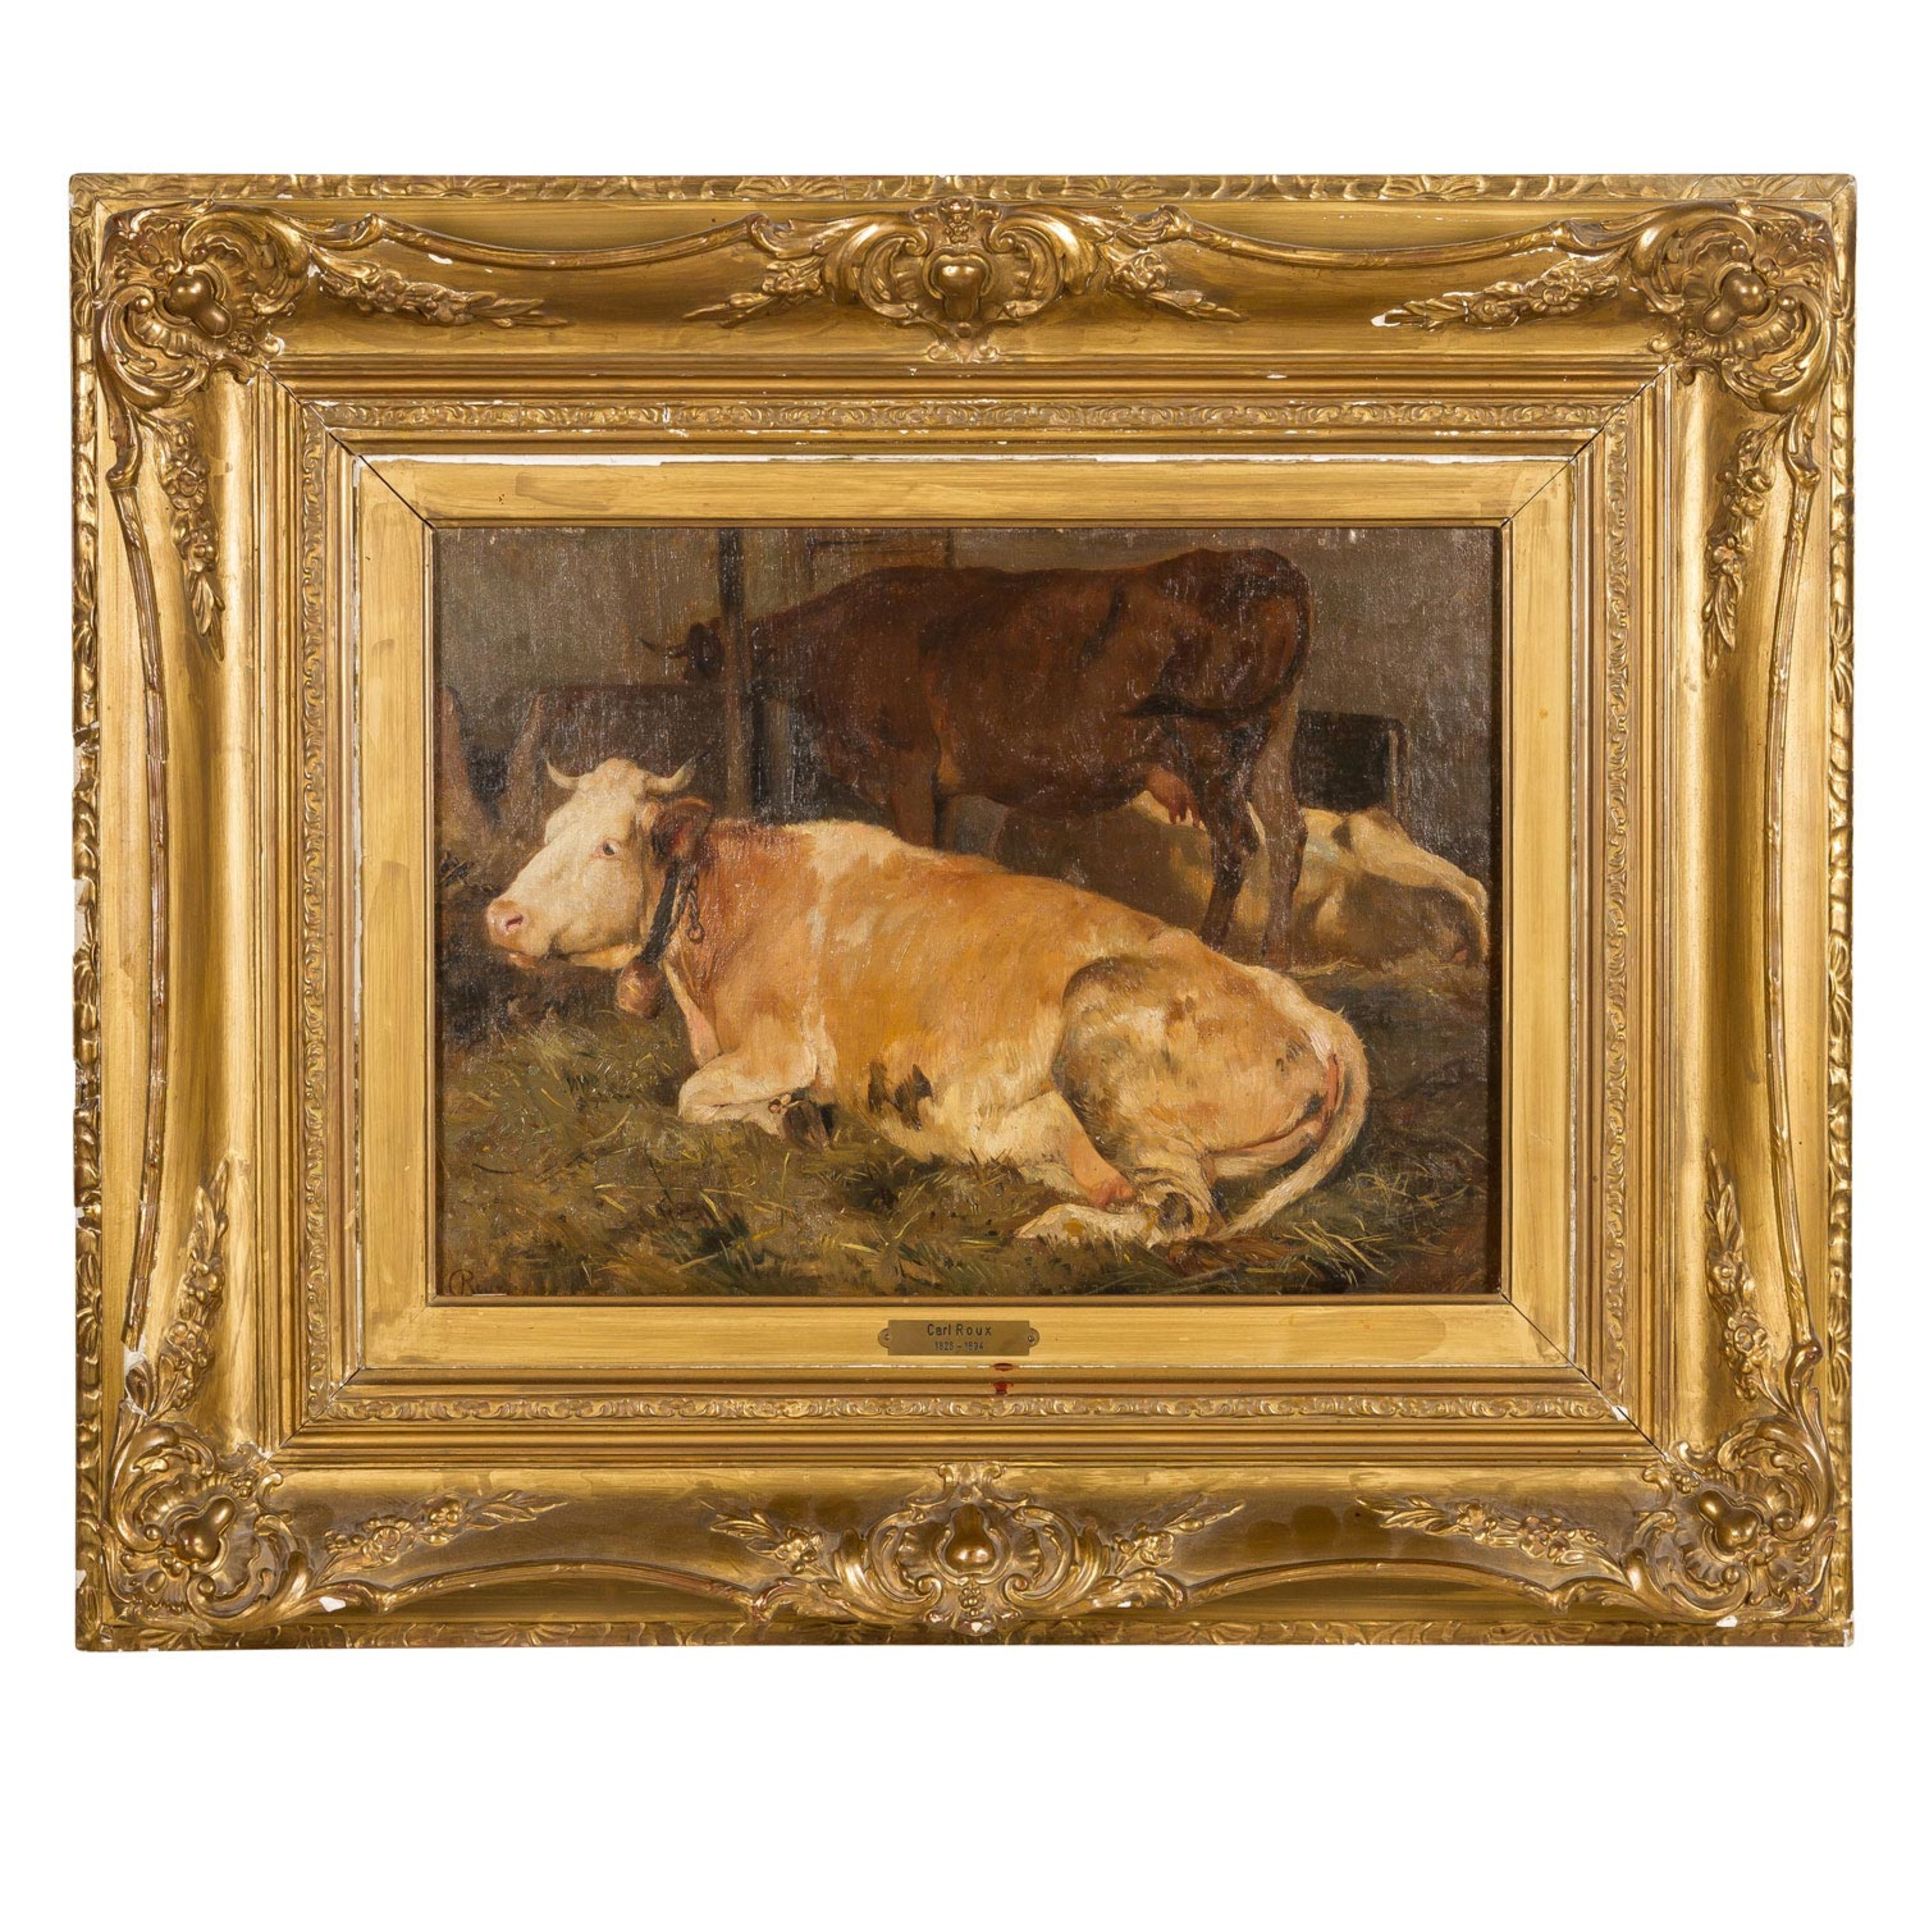 ROUX, KARL (1826-1894) "Kühe im Stall" - Bild 2 aus 8